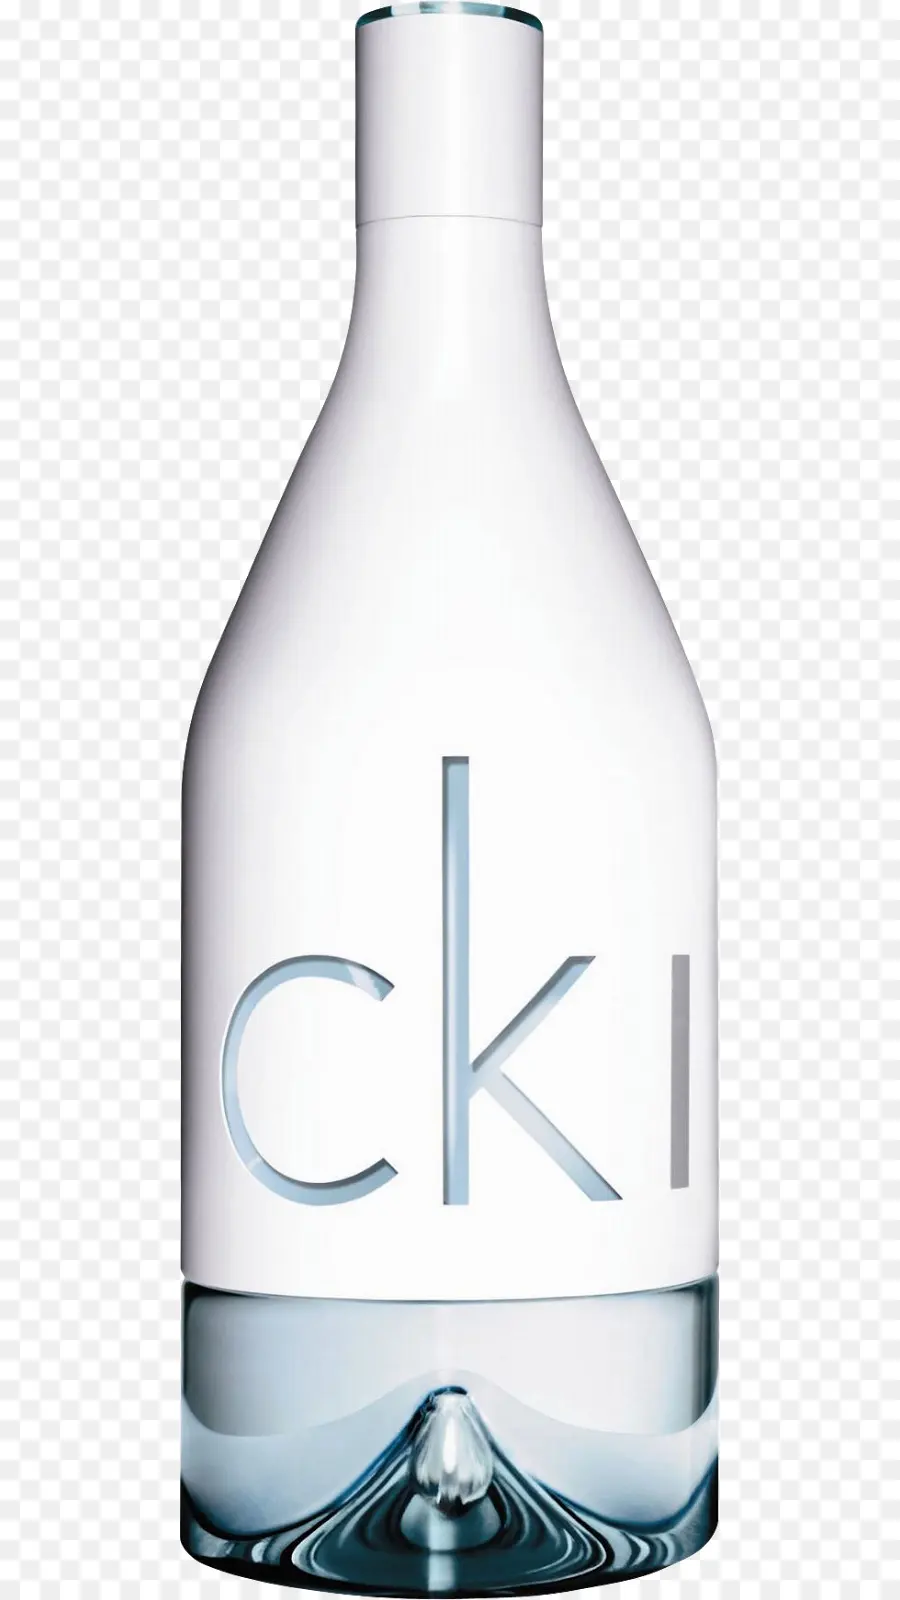 Calvin Klein，Parfum PNG